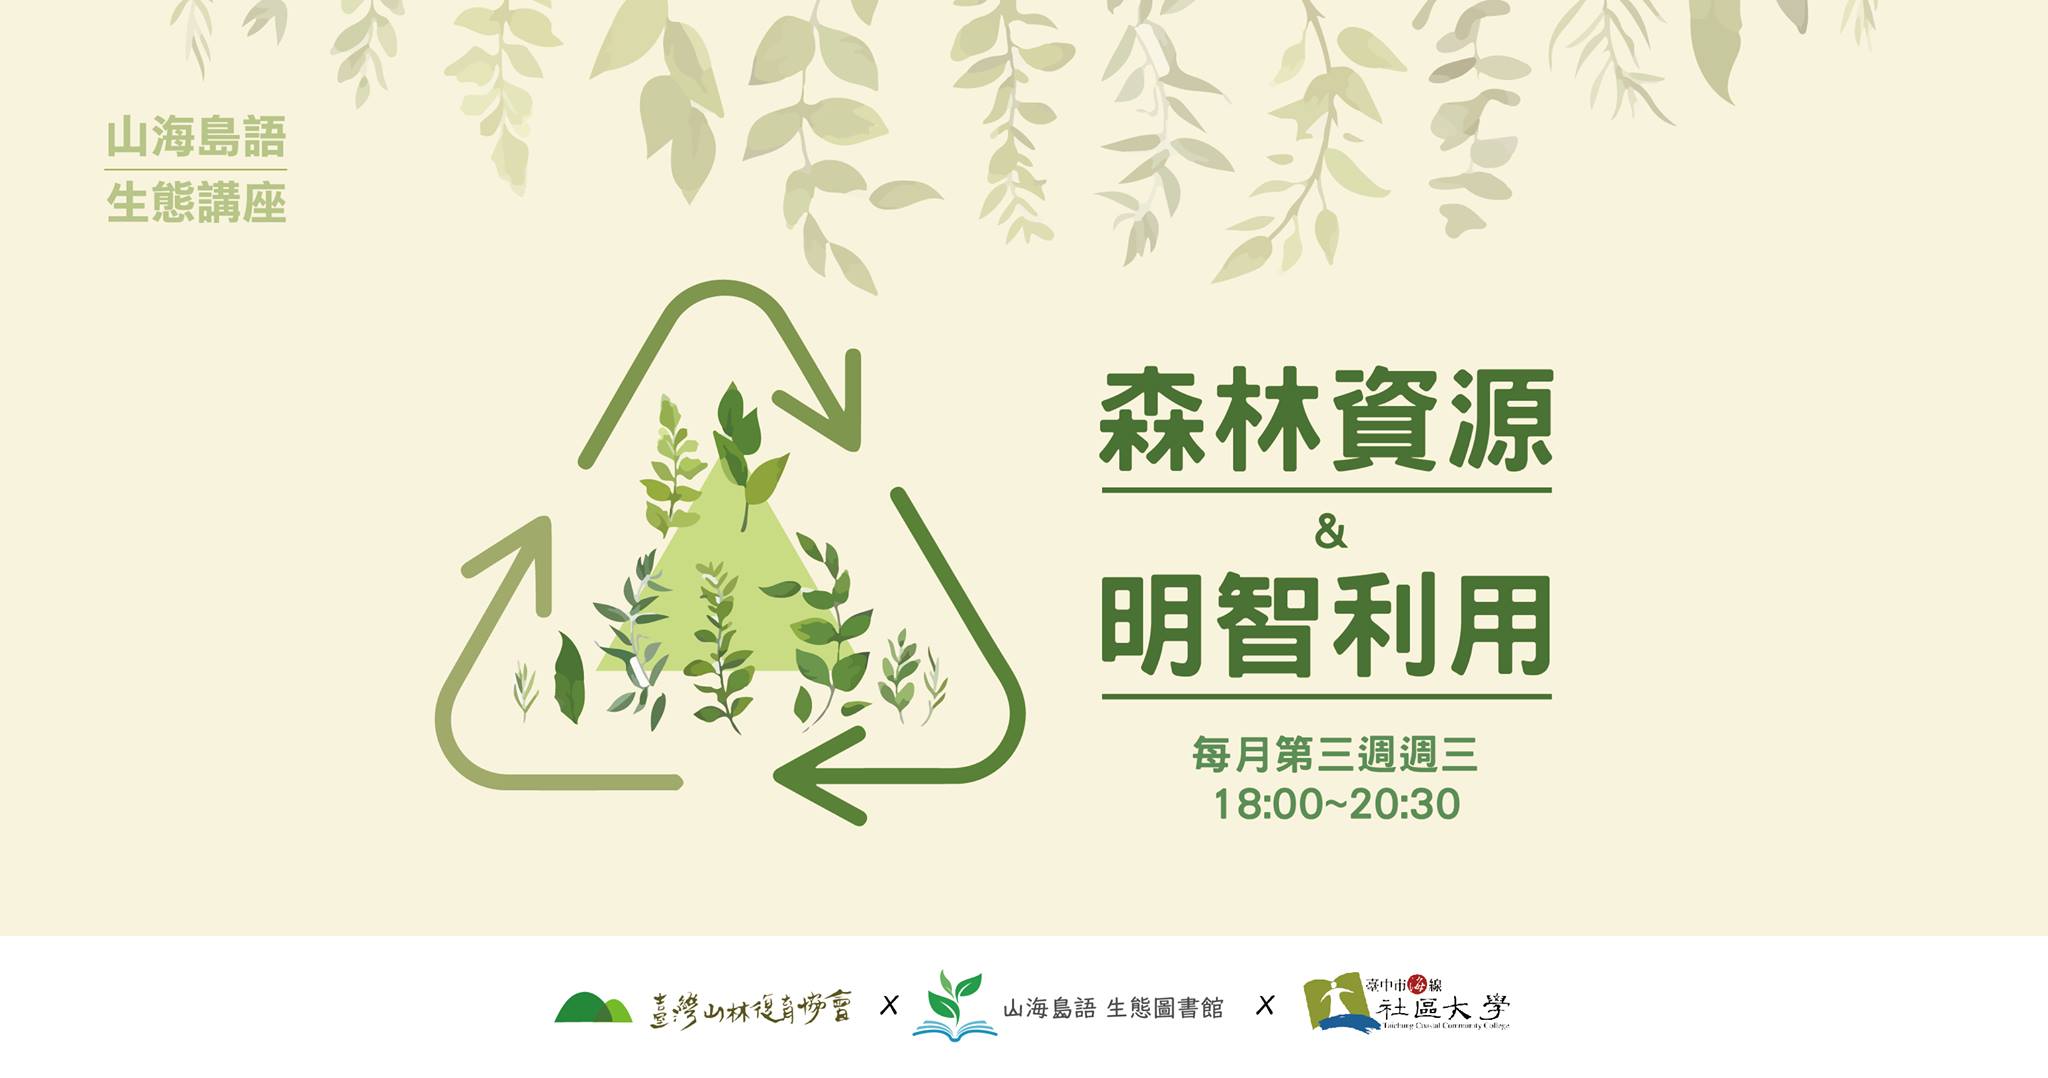 2020/02/19(三)山海島語生態講座《森林資源與明智利用》